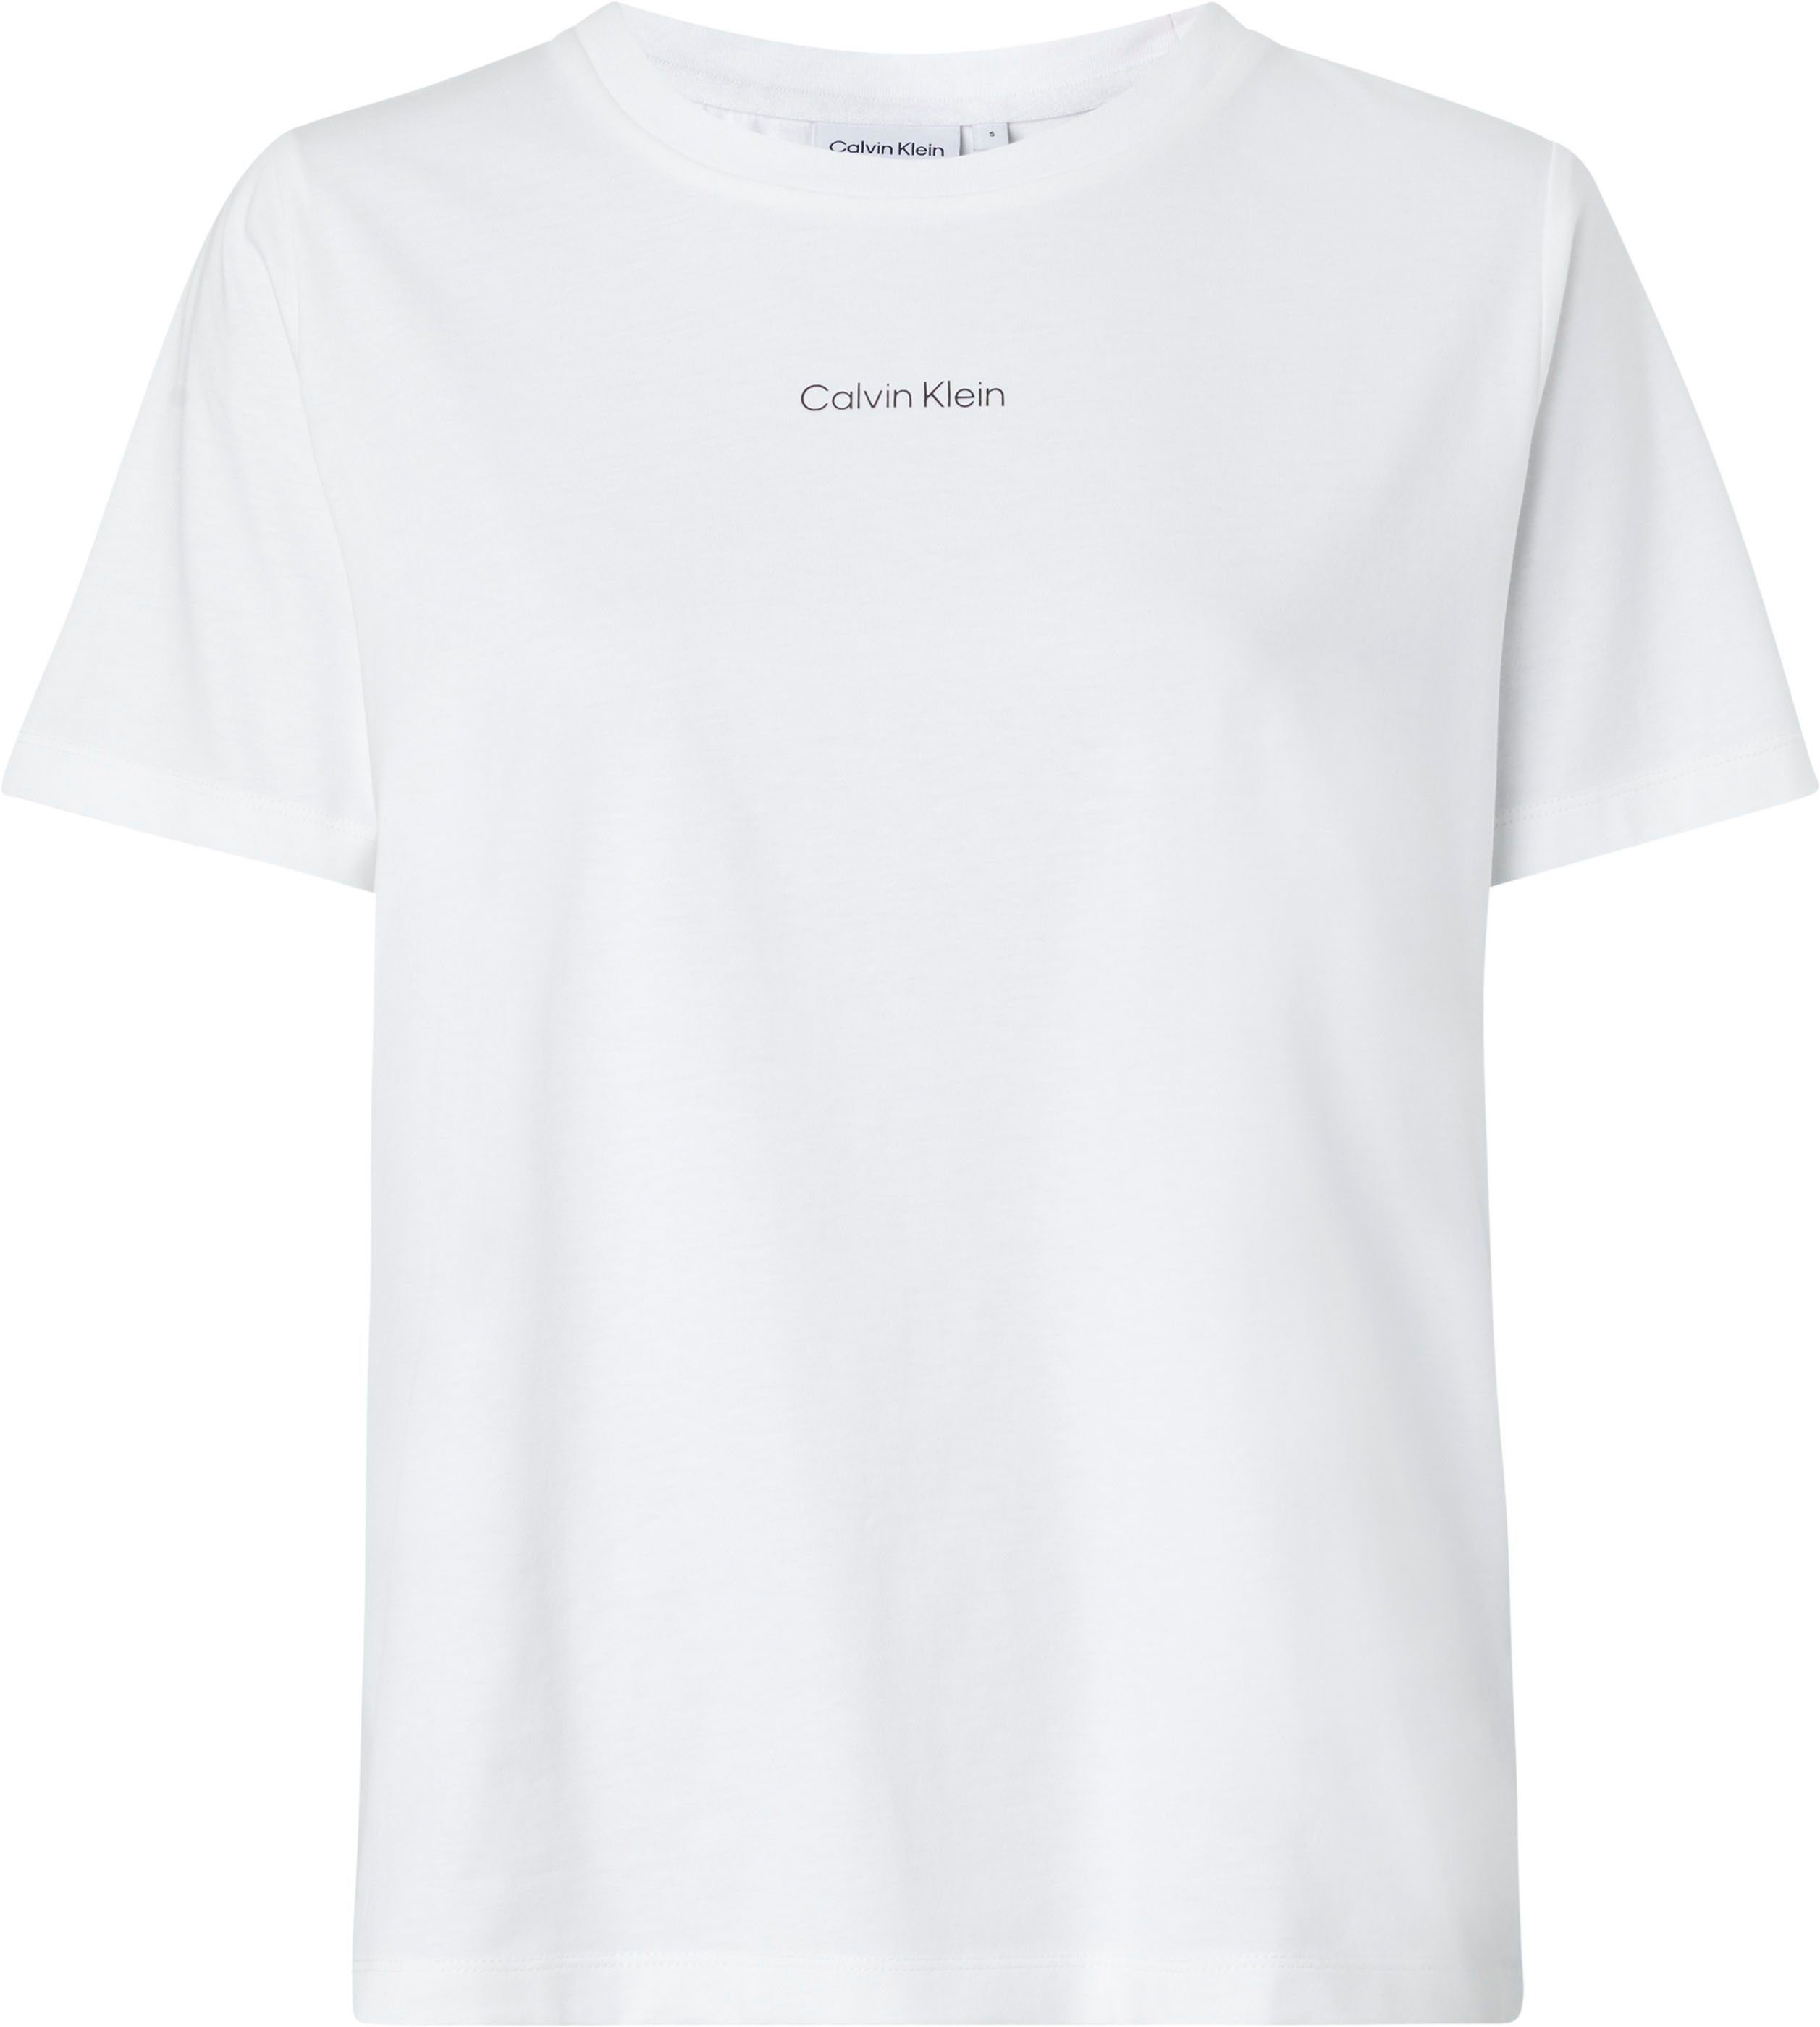 Günstige Calvin Klein Damen T-Shirts online kaufen | OTTO